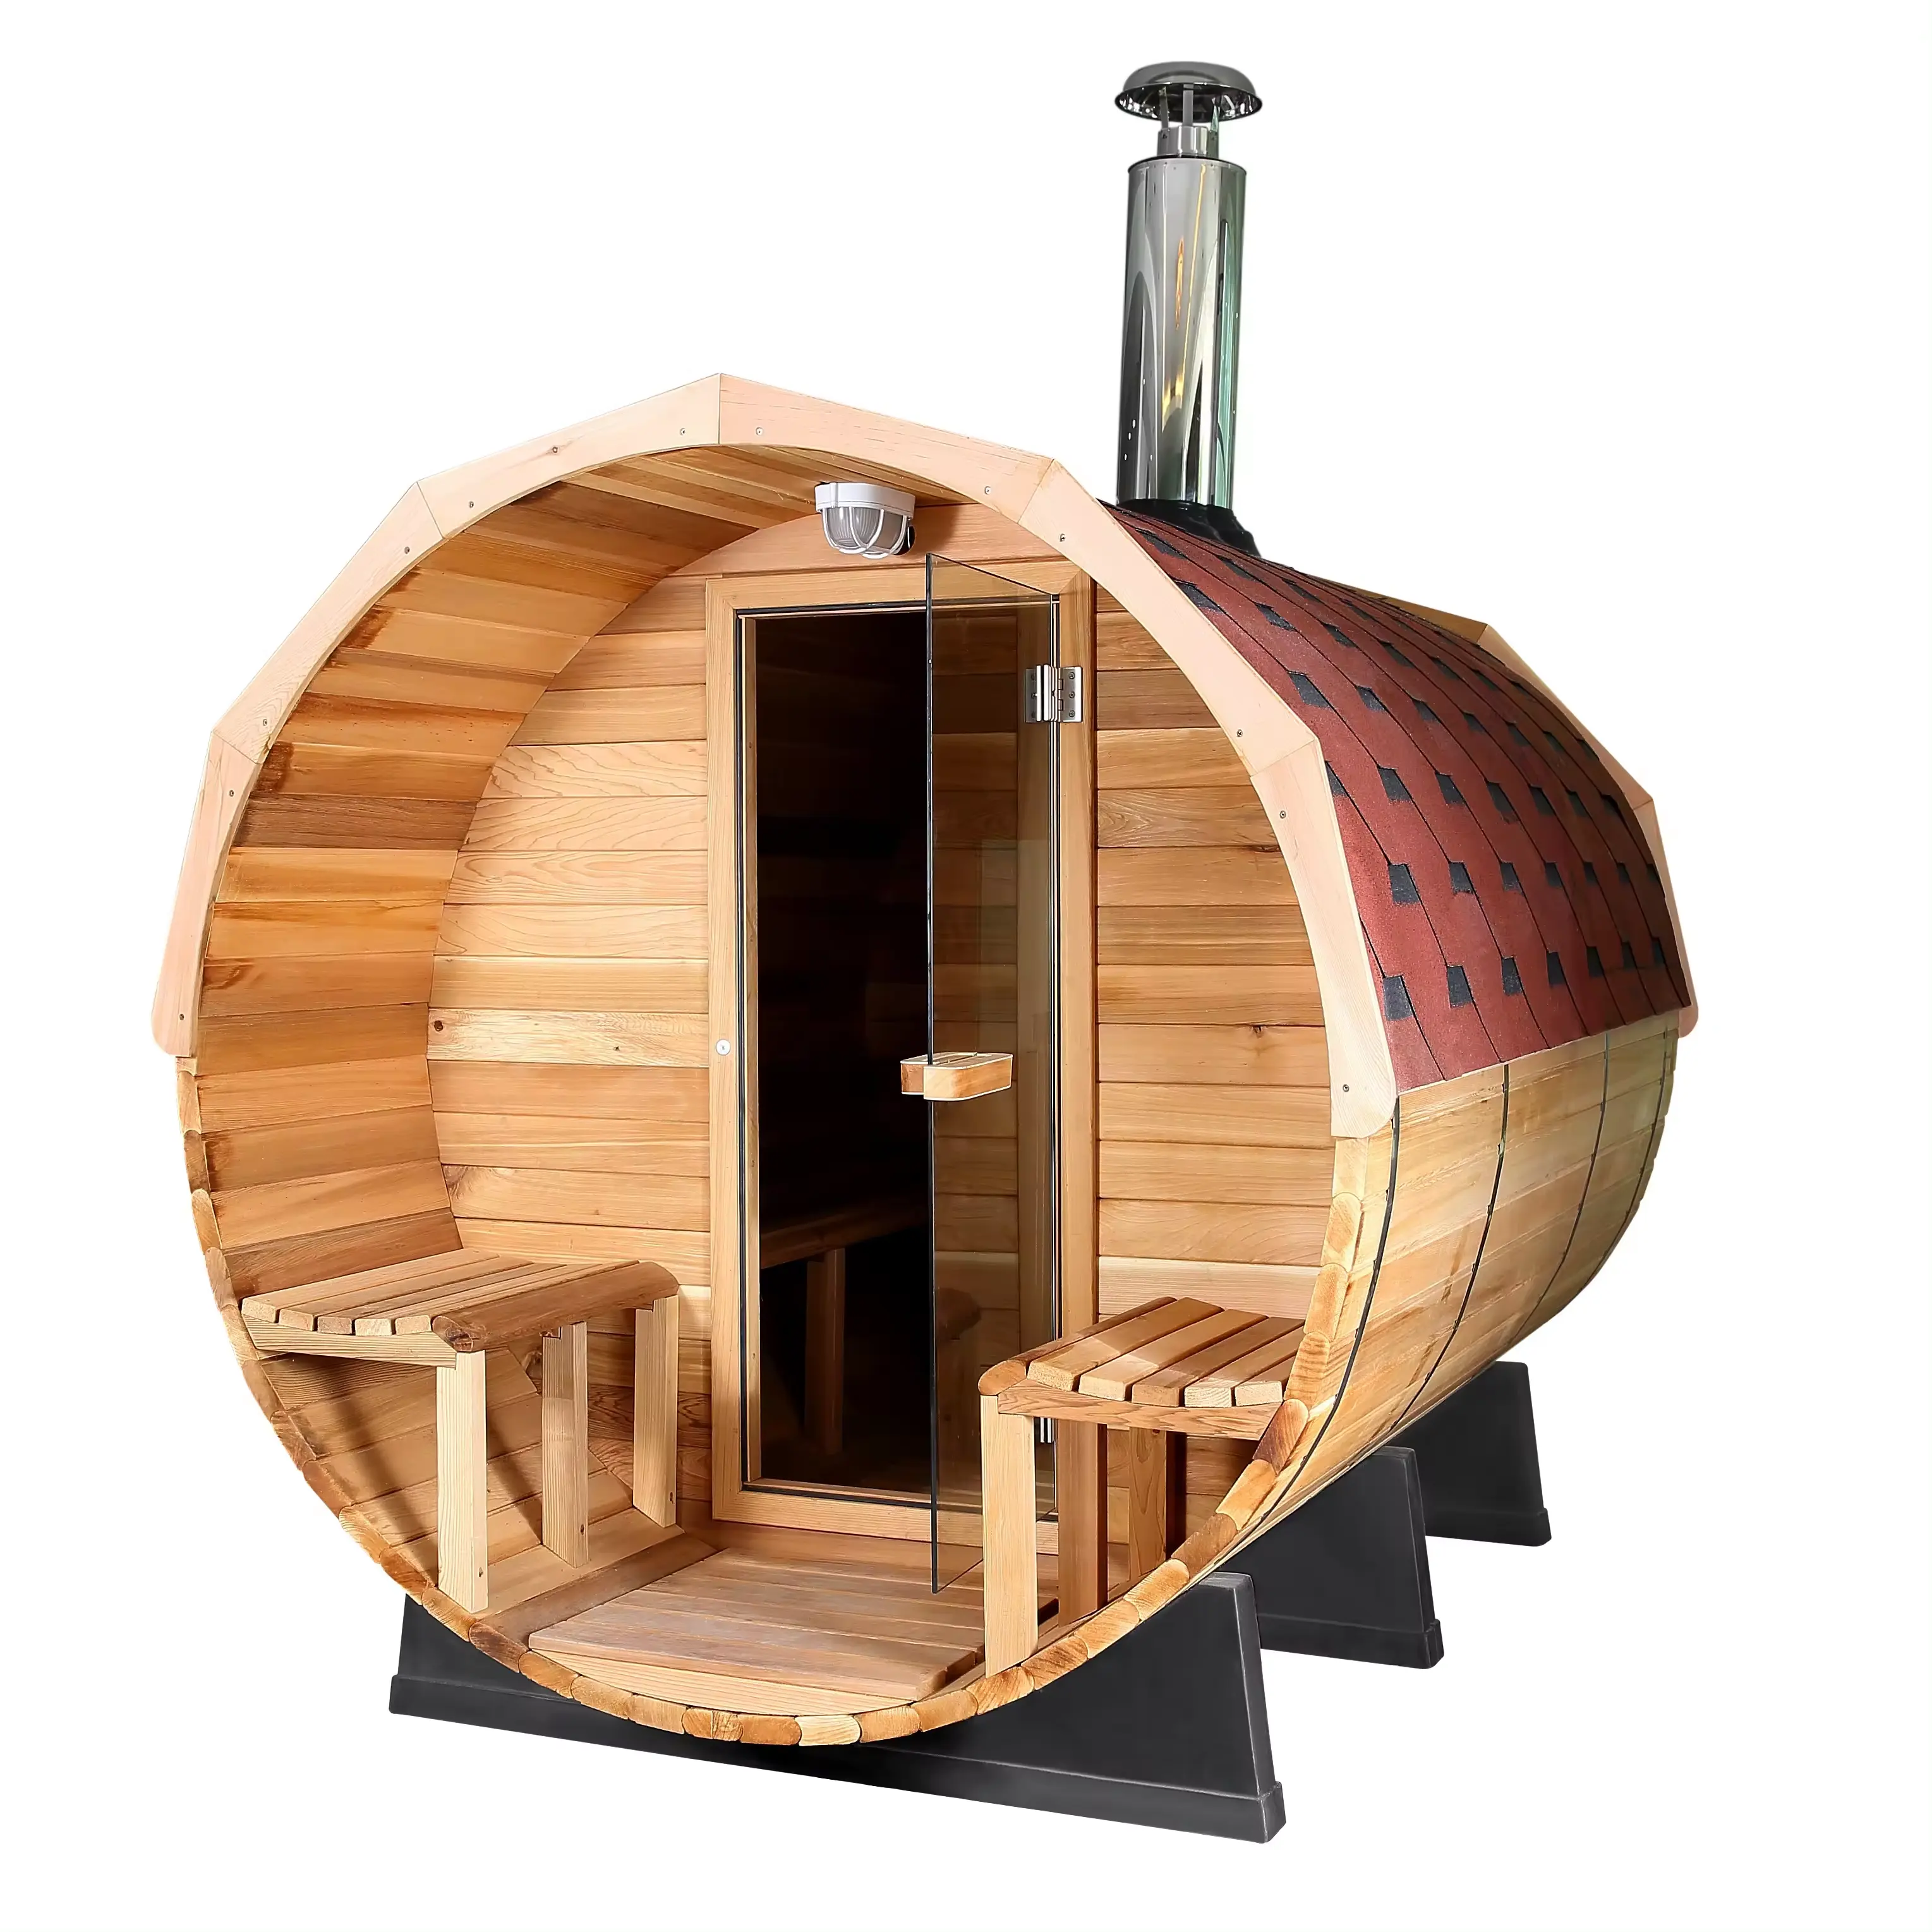 غرفة ساونا منزلية خشبية بتصميم جديد تتسع لـ 2-4 شخصًا وتعمل بالبخار الجاف في الهواء الطلق